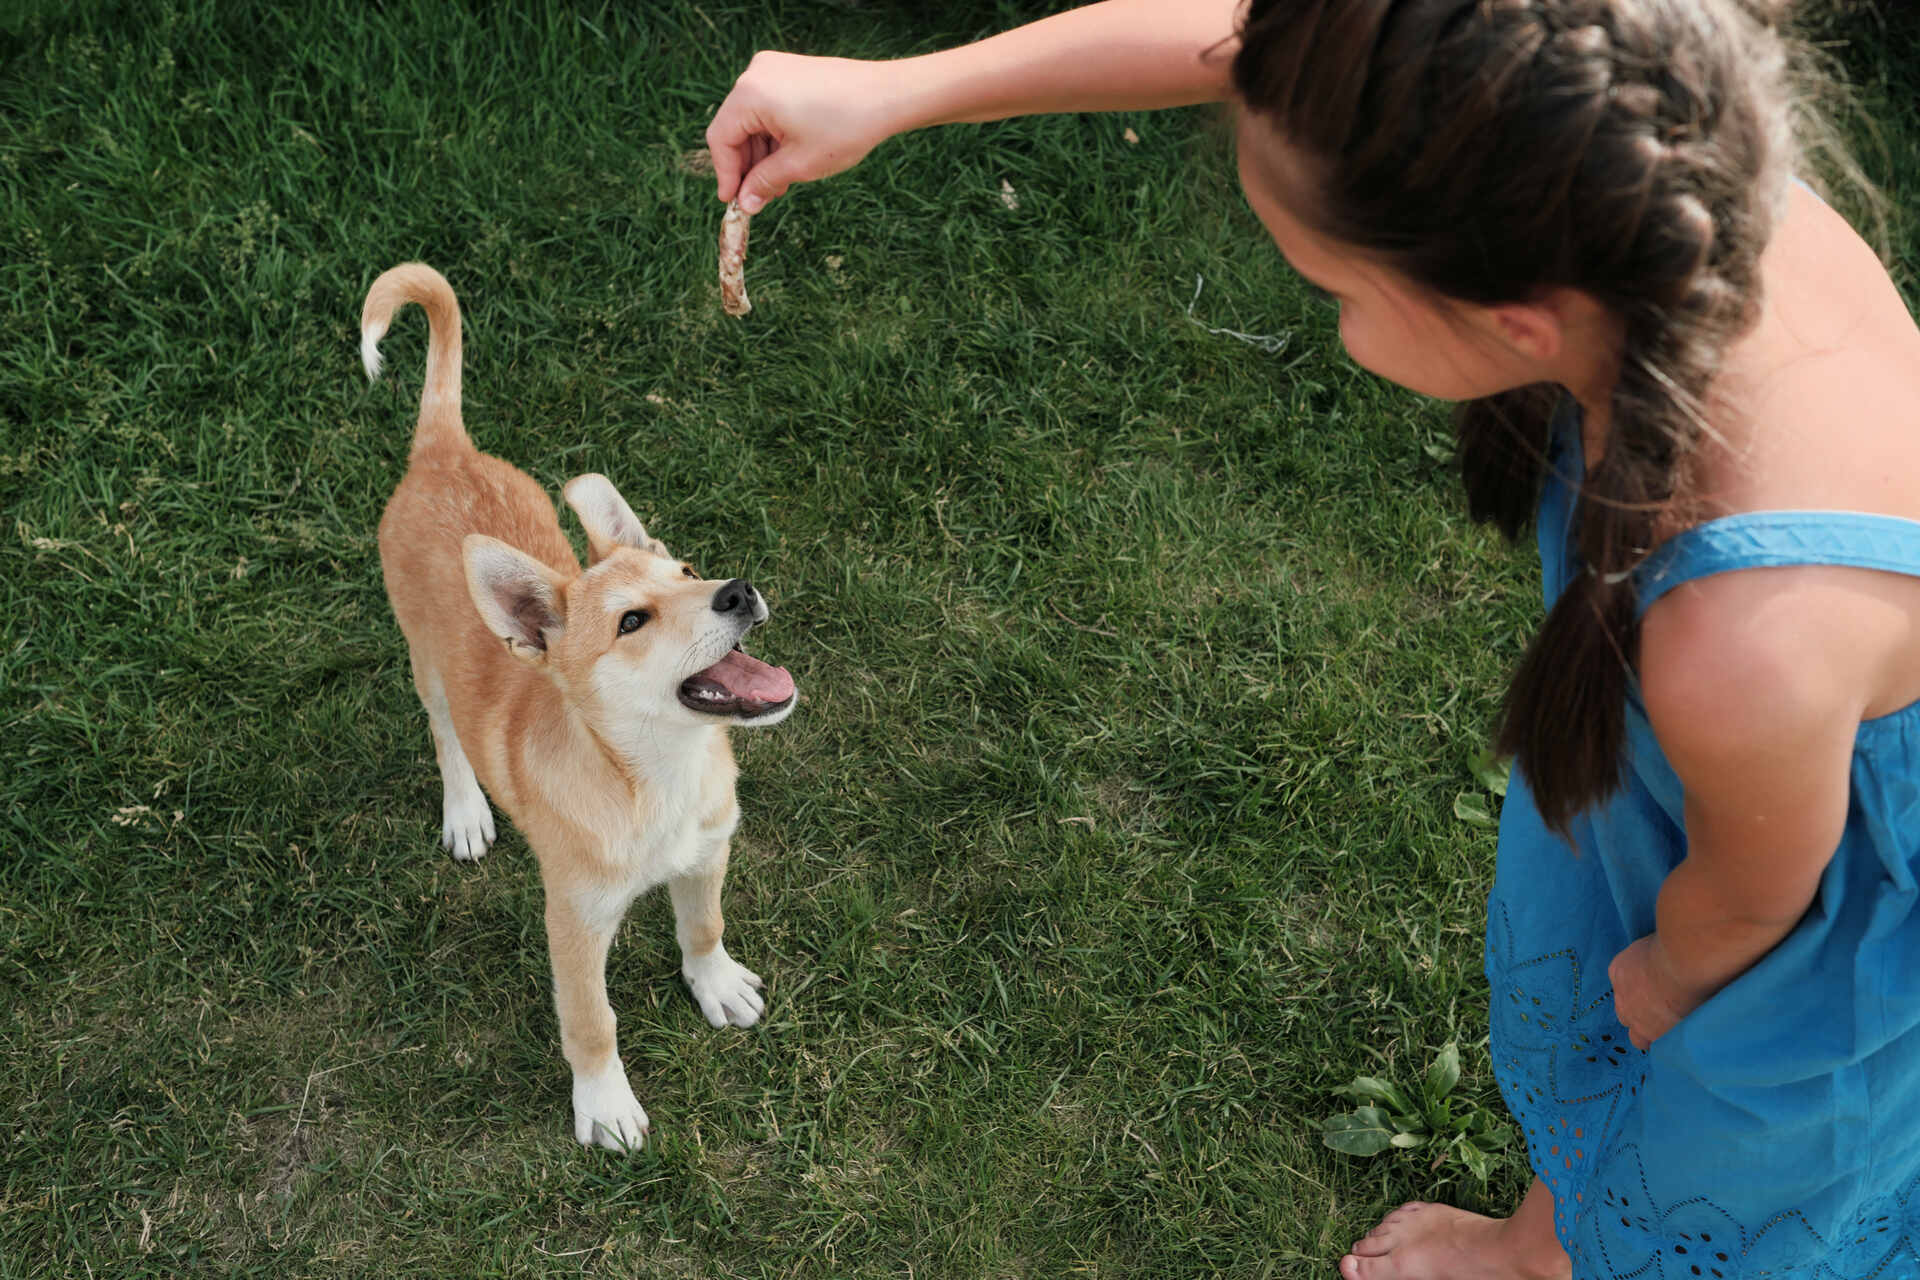 A girl feeding a stray dog